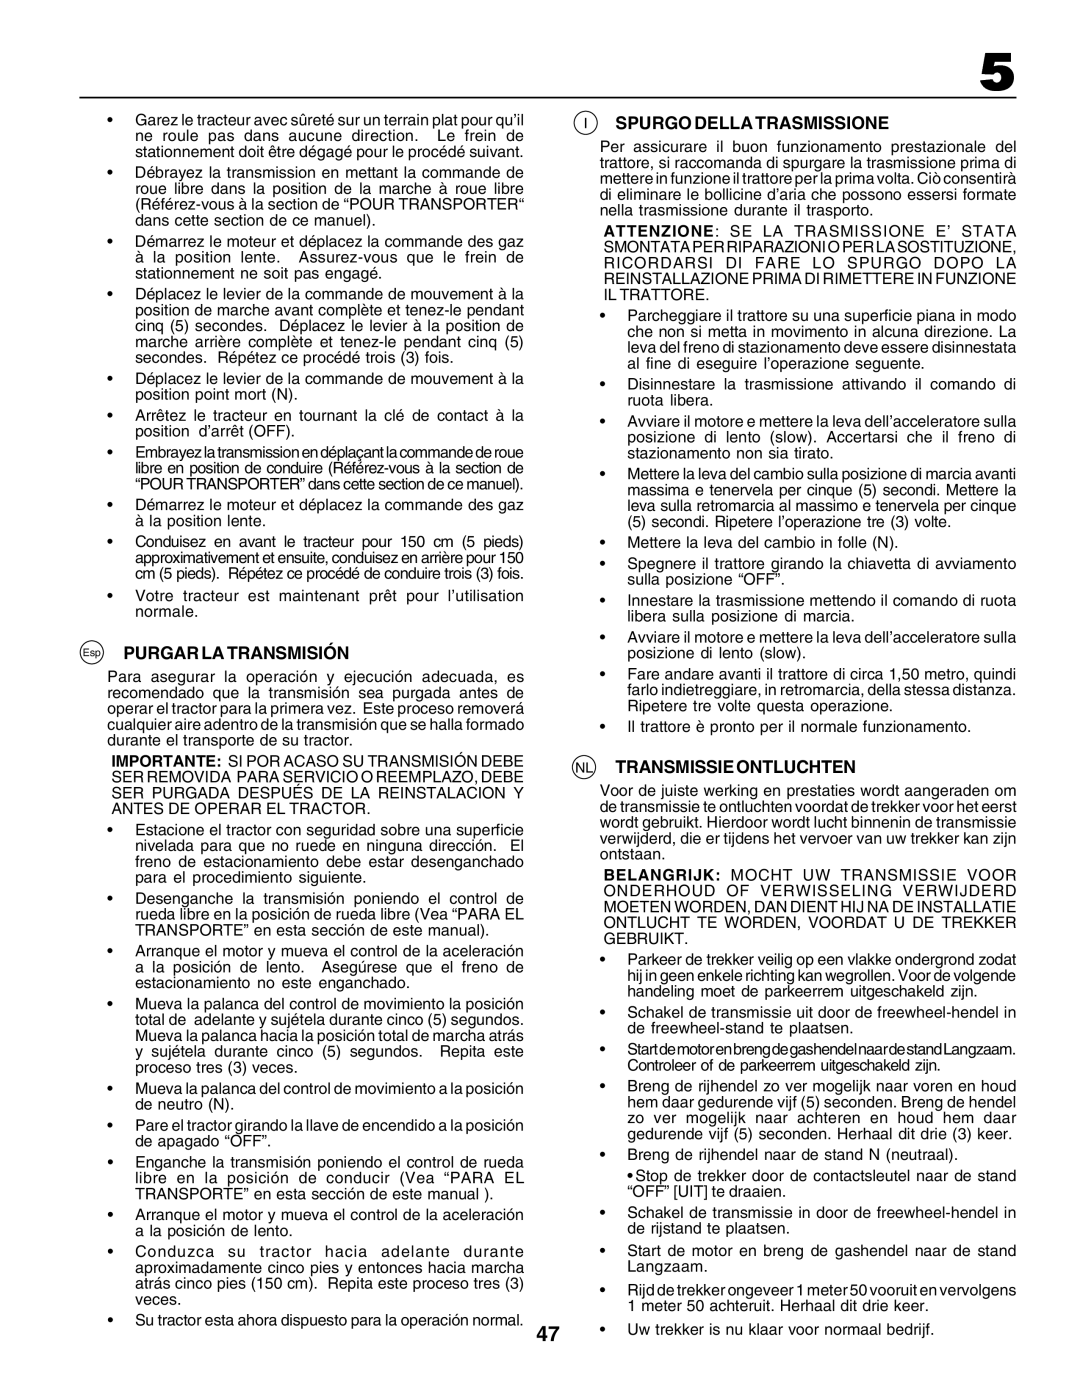 Husqvarna GTH250 instruction manual Esp PURGAR LA TRANSMISIÓN, Spurgo Della Trasmissione, Nl Transmissie Ontluchten 